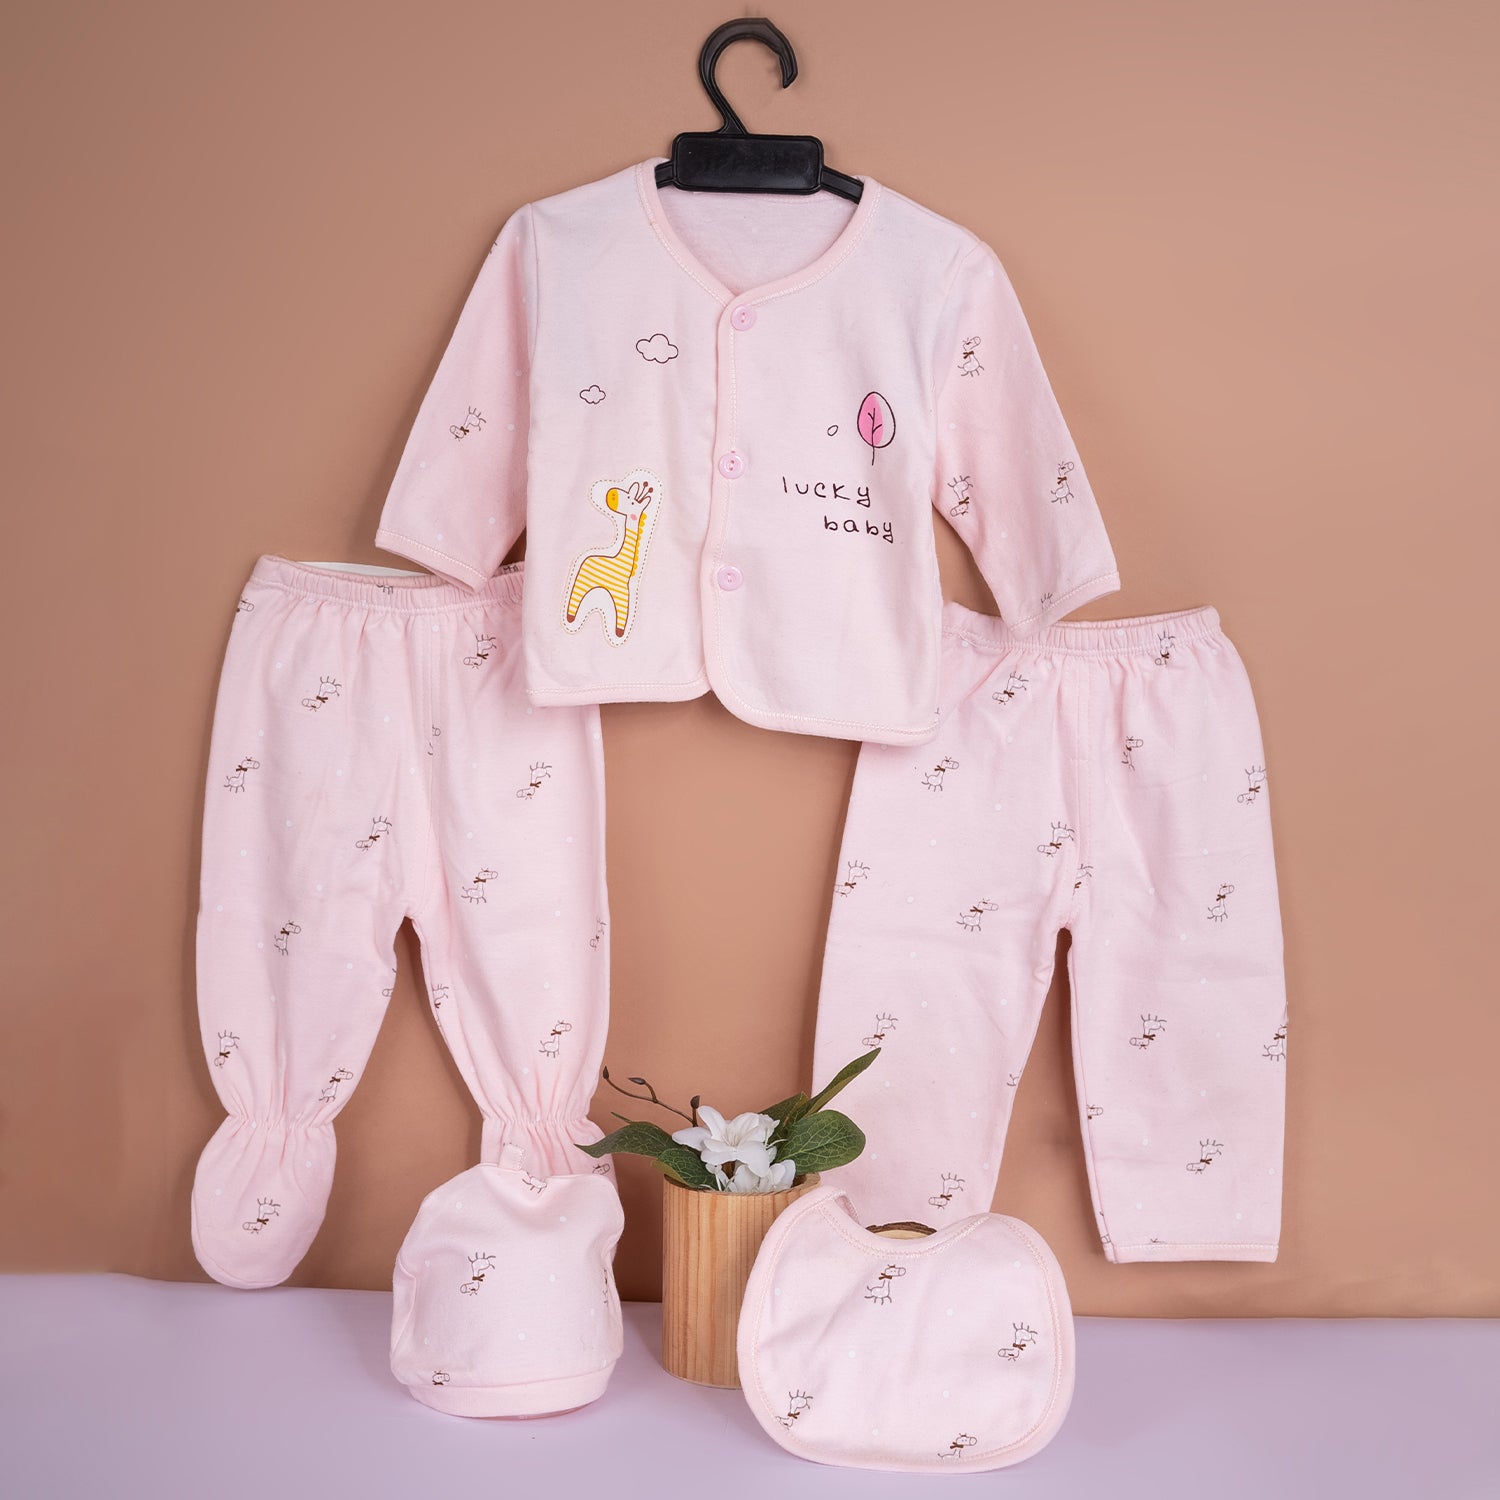 Baby Moo Giraffe Print Cap Bib Pyjamas 5 Pcs Clothing Gift Set - Pink